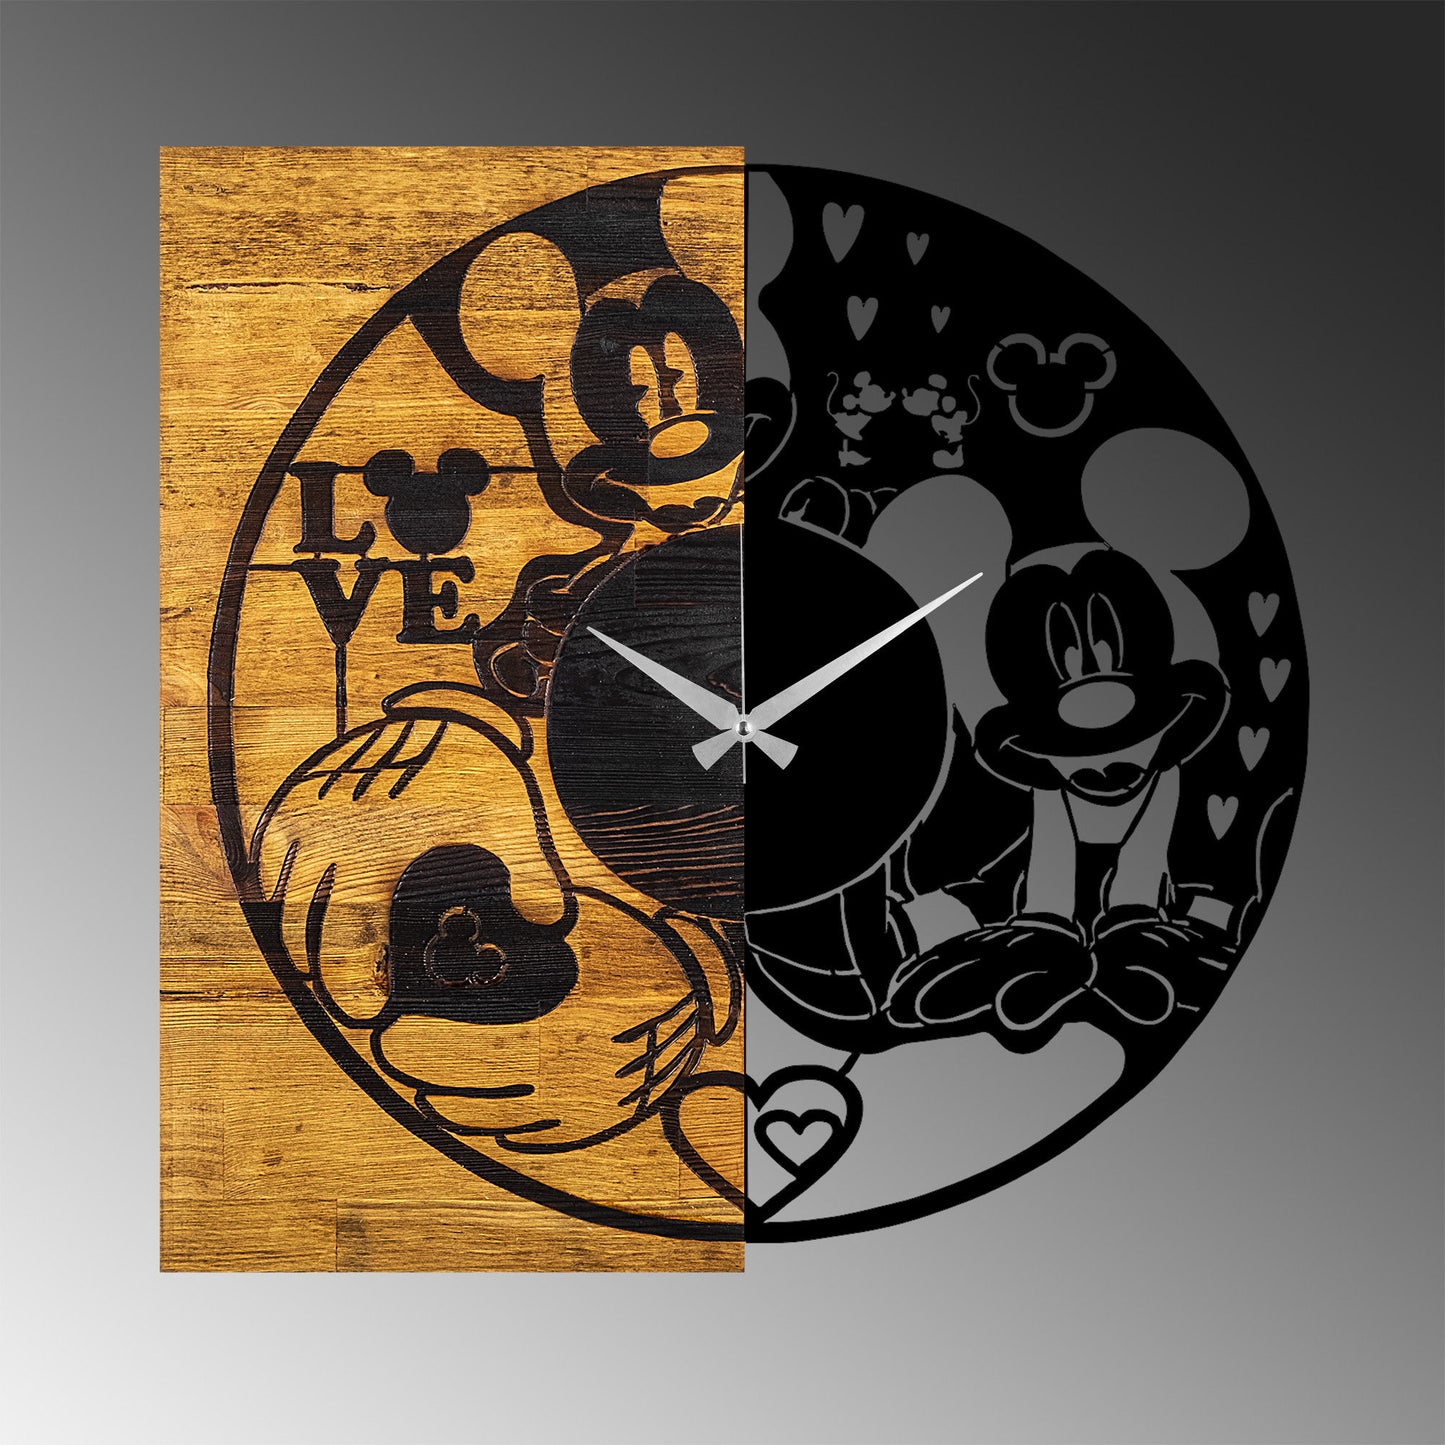 Wooden Clock 16 - Decorative Wooden Wall Clock